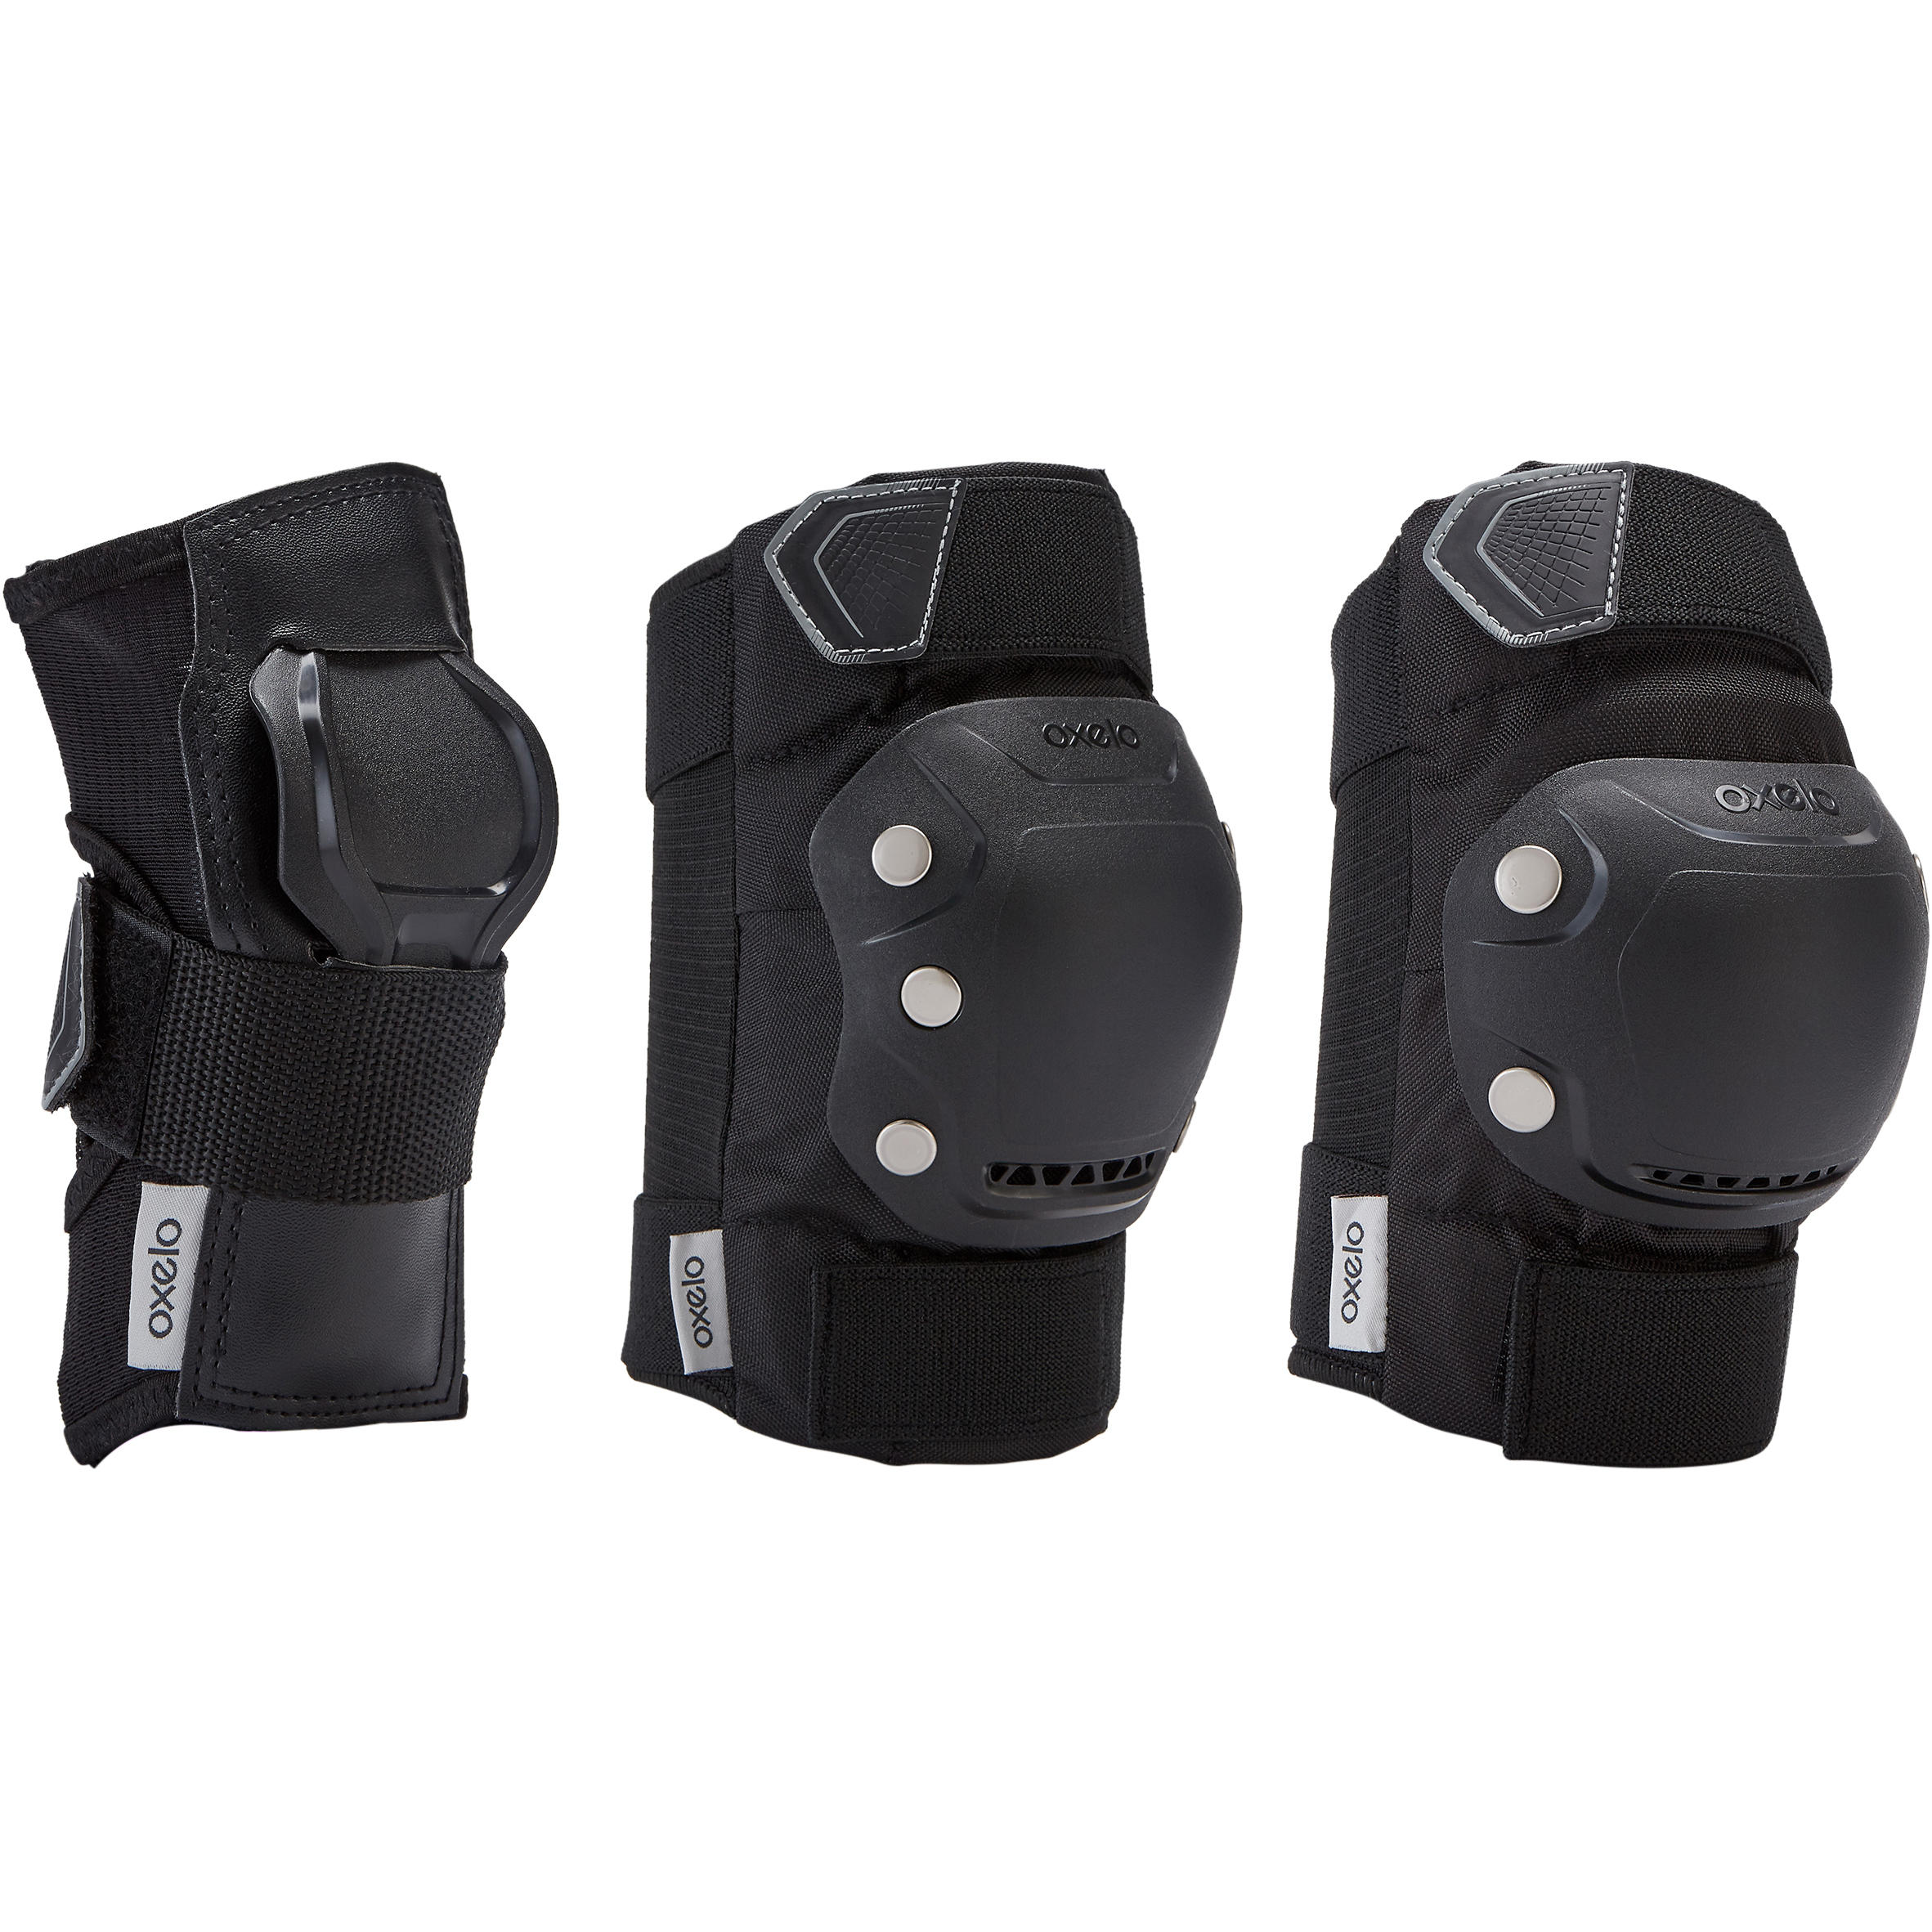 Protections corporelles pour patins à roues alignées - FIT500 noir/gris -  Noir, Noir, Gris comète - Oxelo - Décathlon